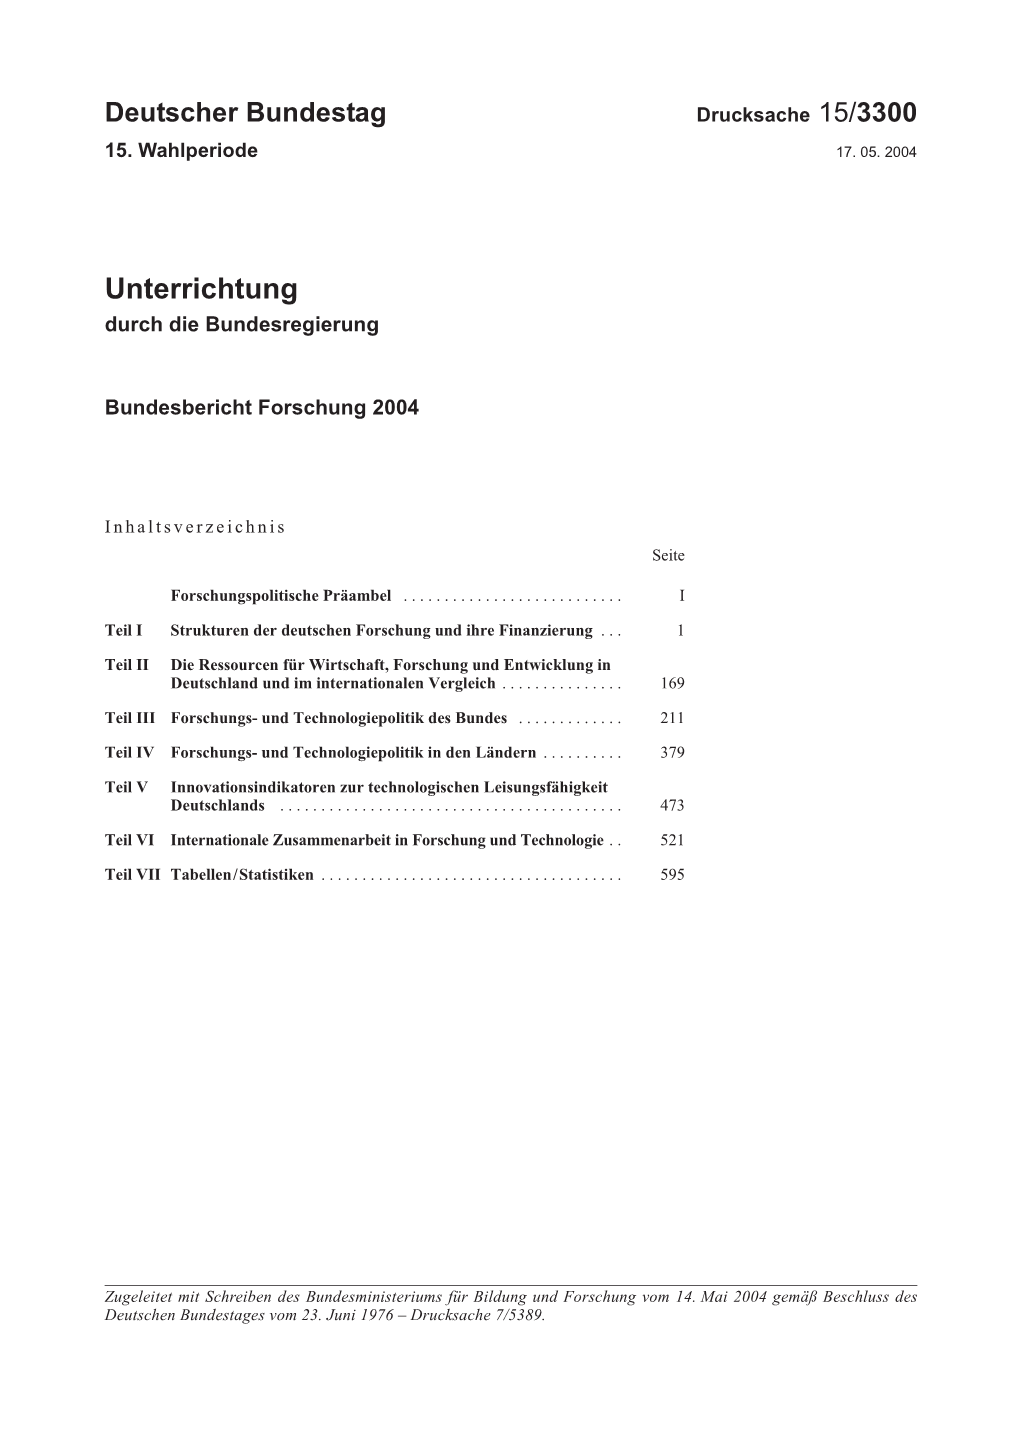 Bundesbericht Forschung 2004